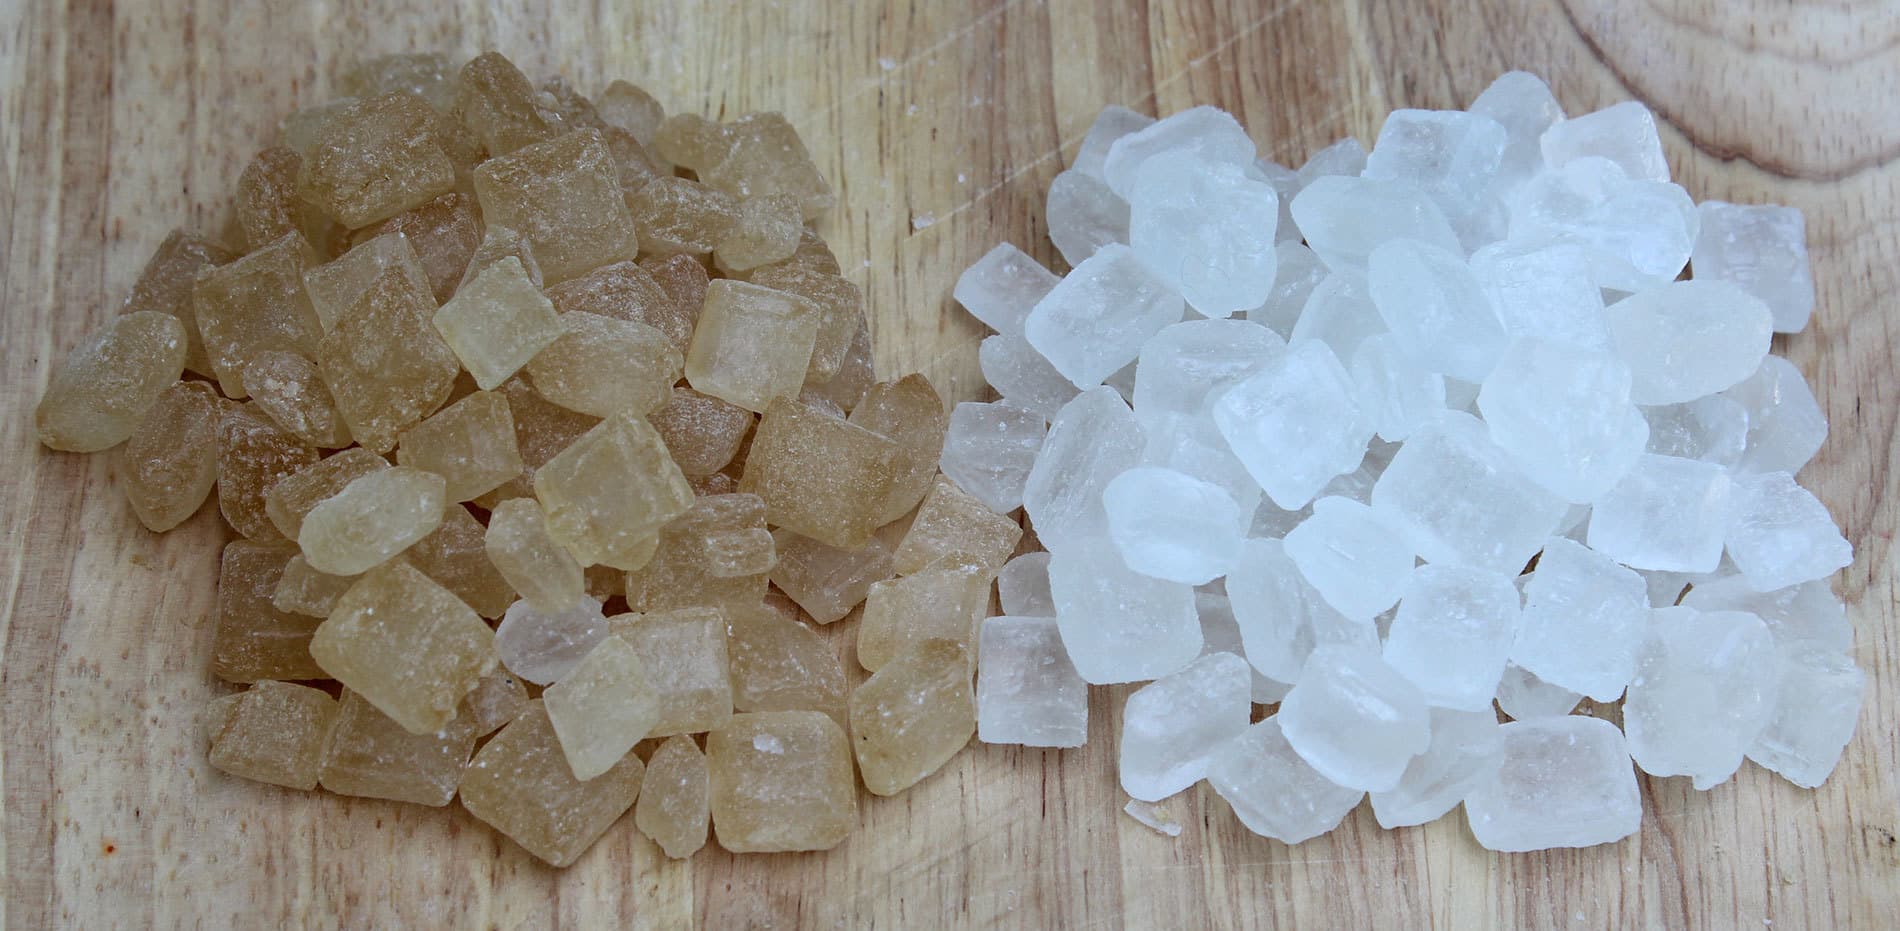 น้ำตาลกรวด กับ น้ำตาลทราย อย่างไหนดีกว่ากัน?